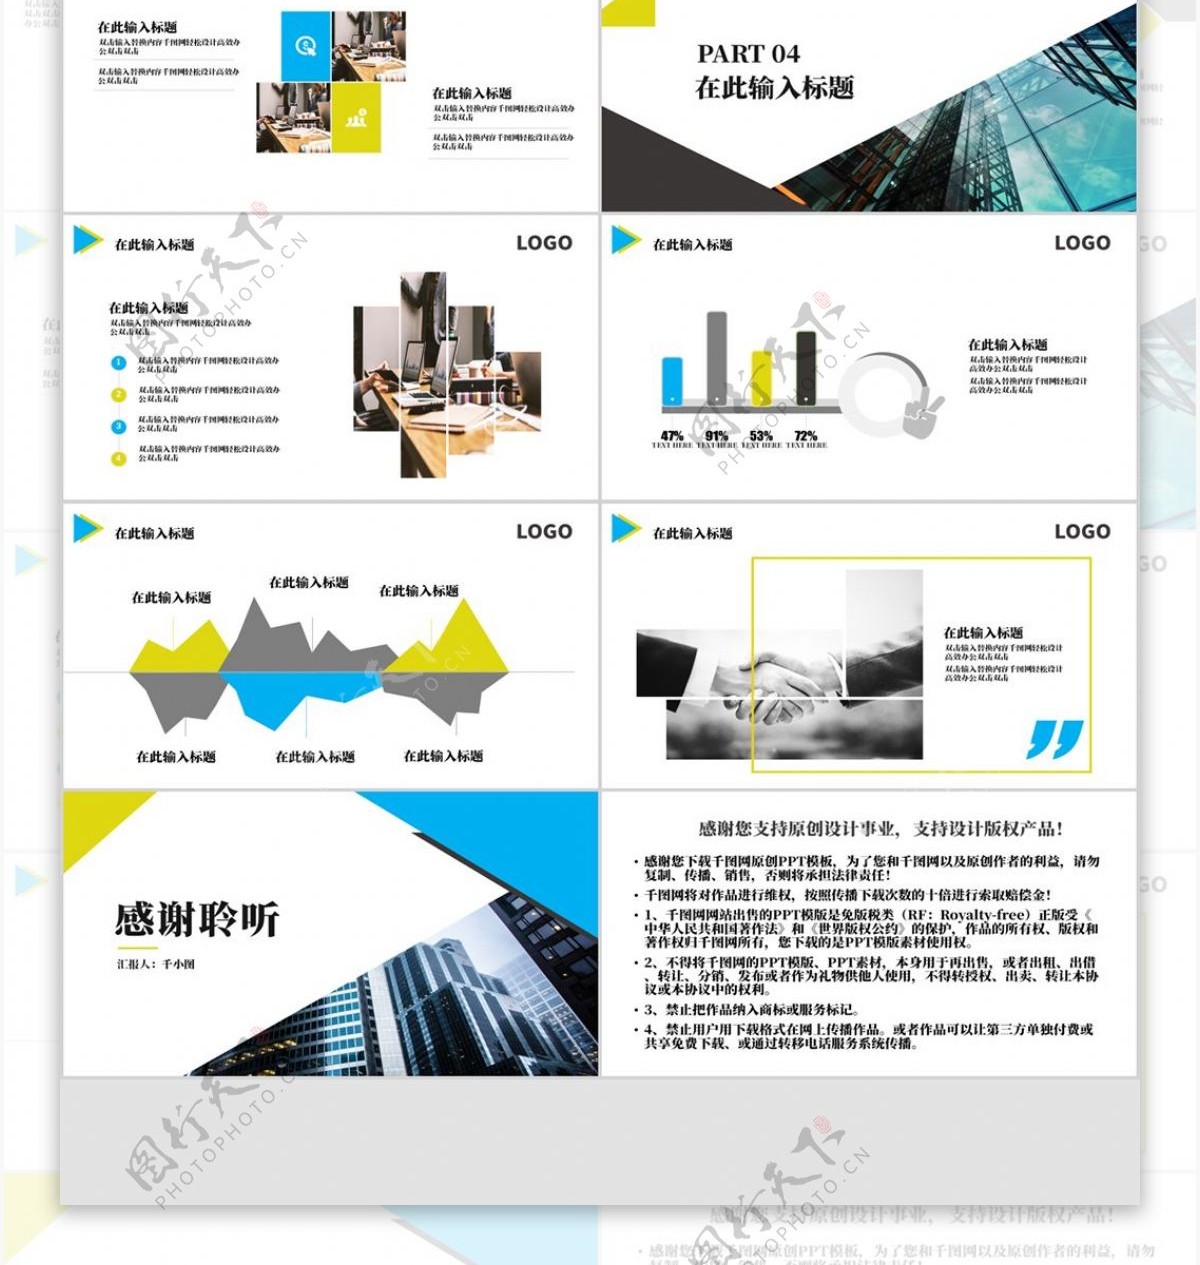 黄蓝亮色系之企业宣传PPT模板通用型